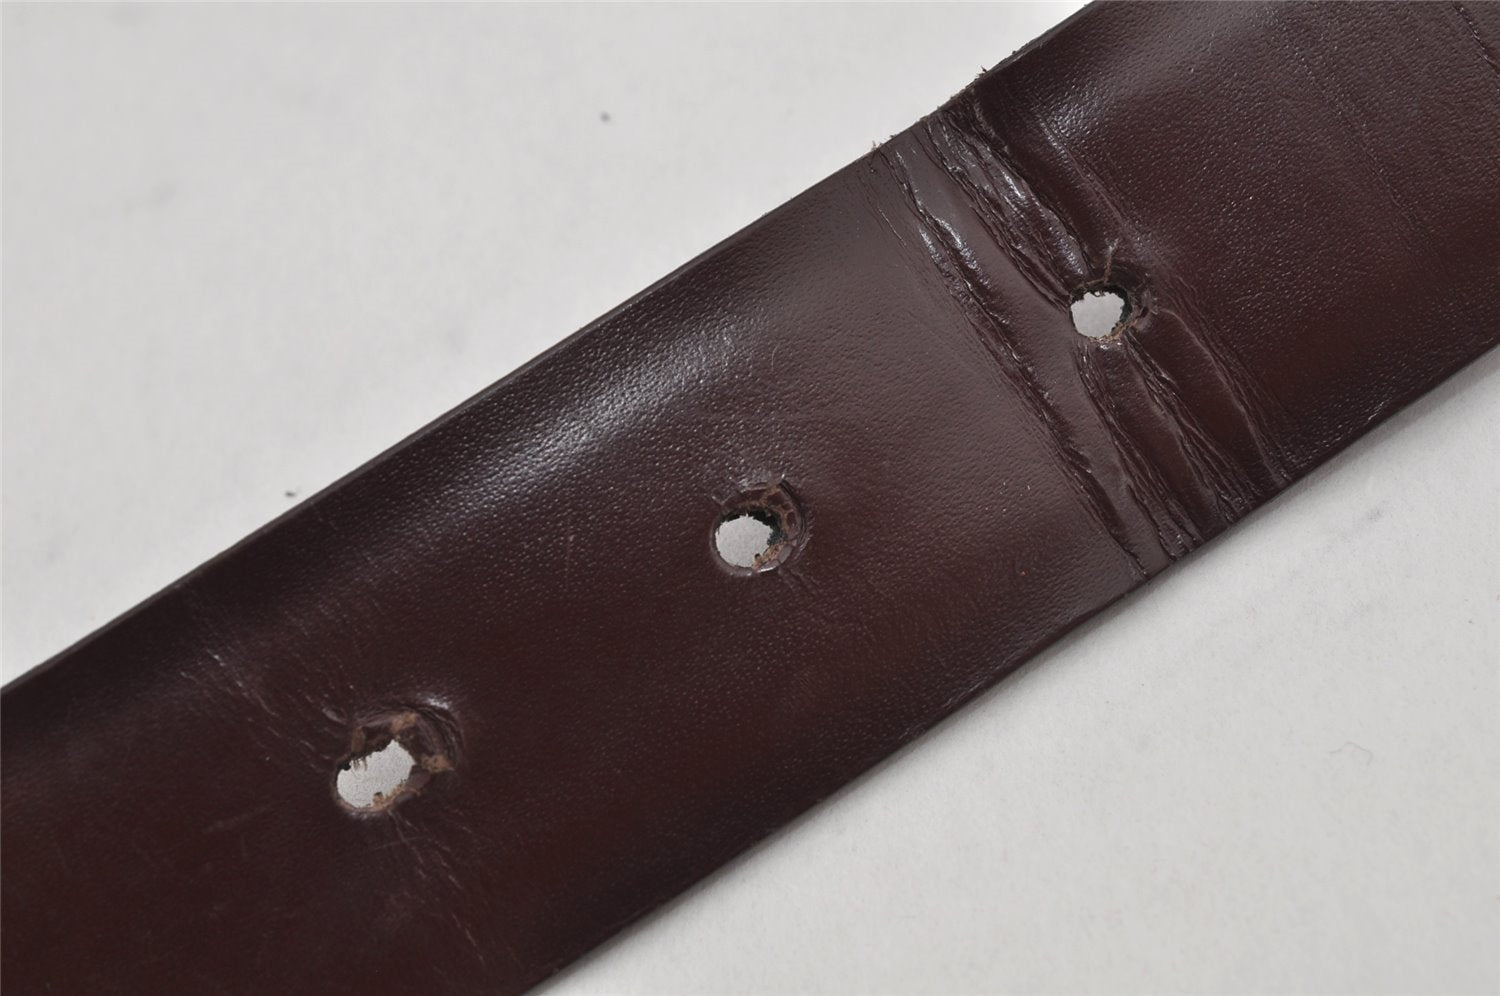 Authentic GUCCI Vintage Belt Leather Size 85cm 33.5